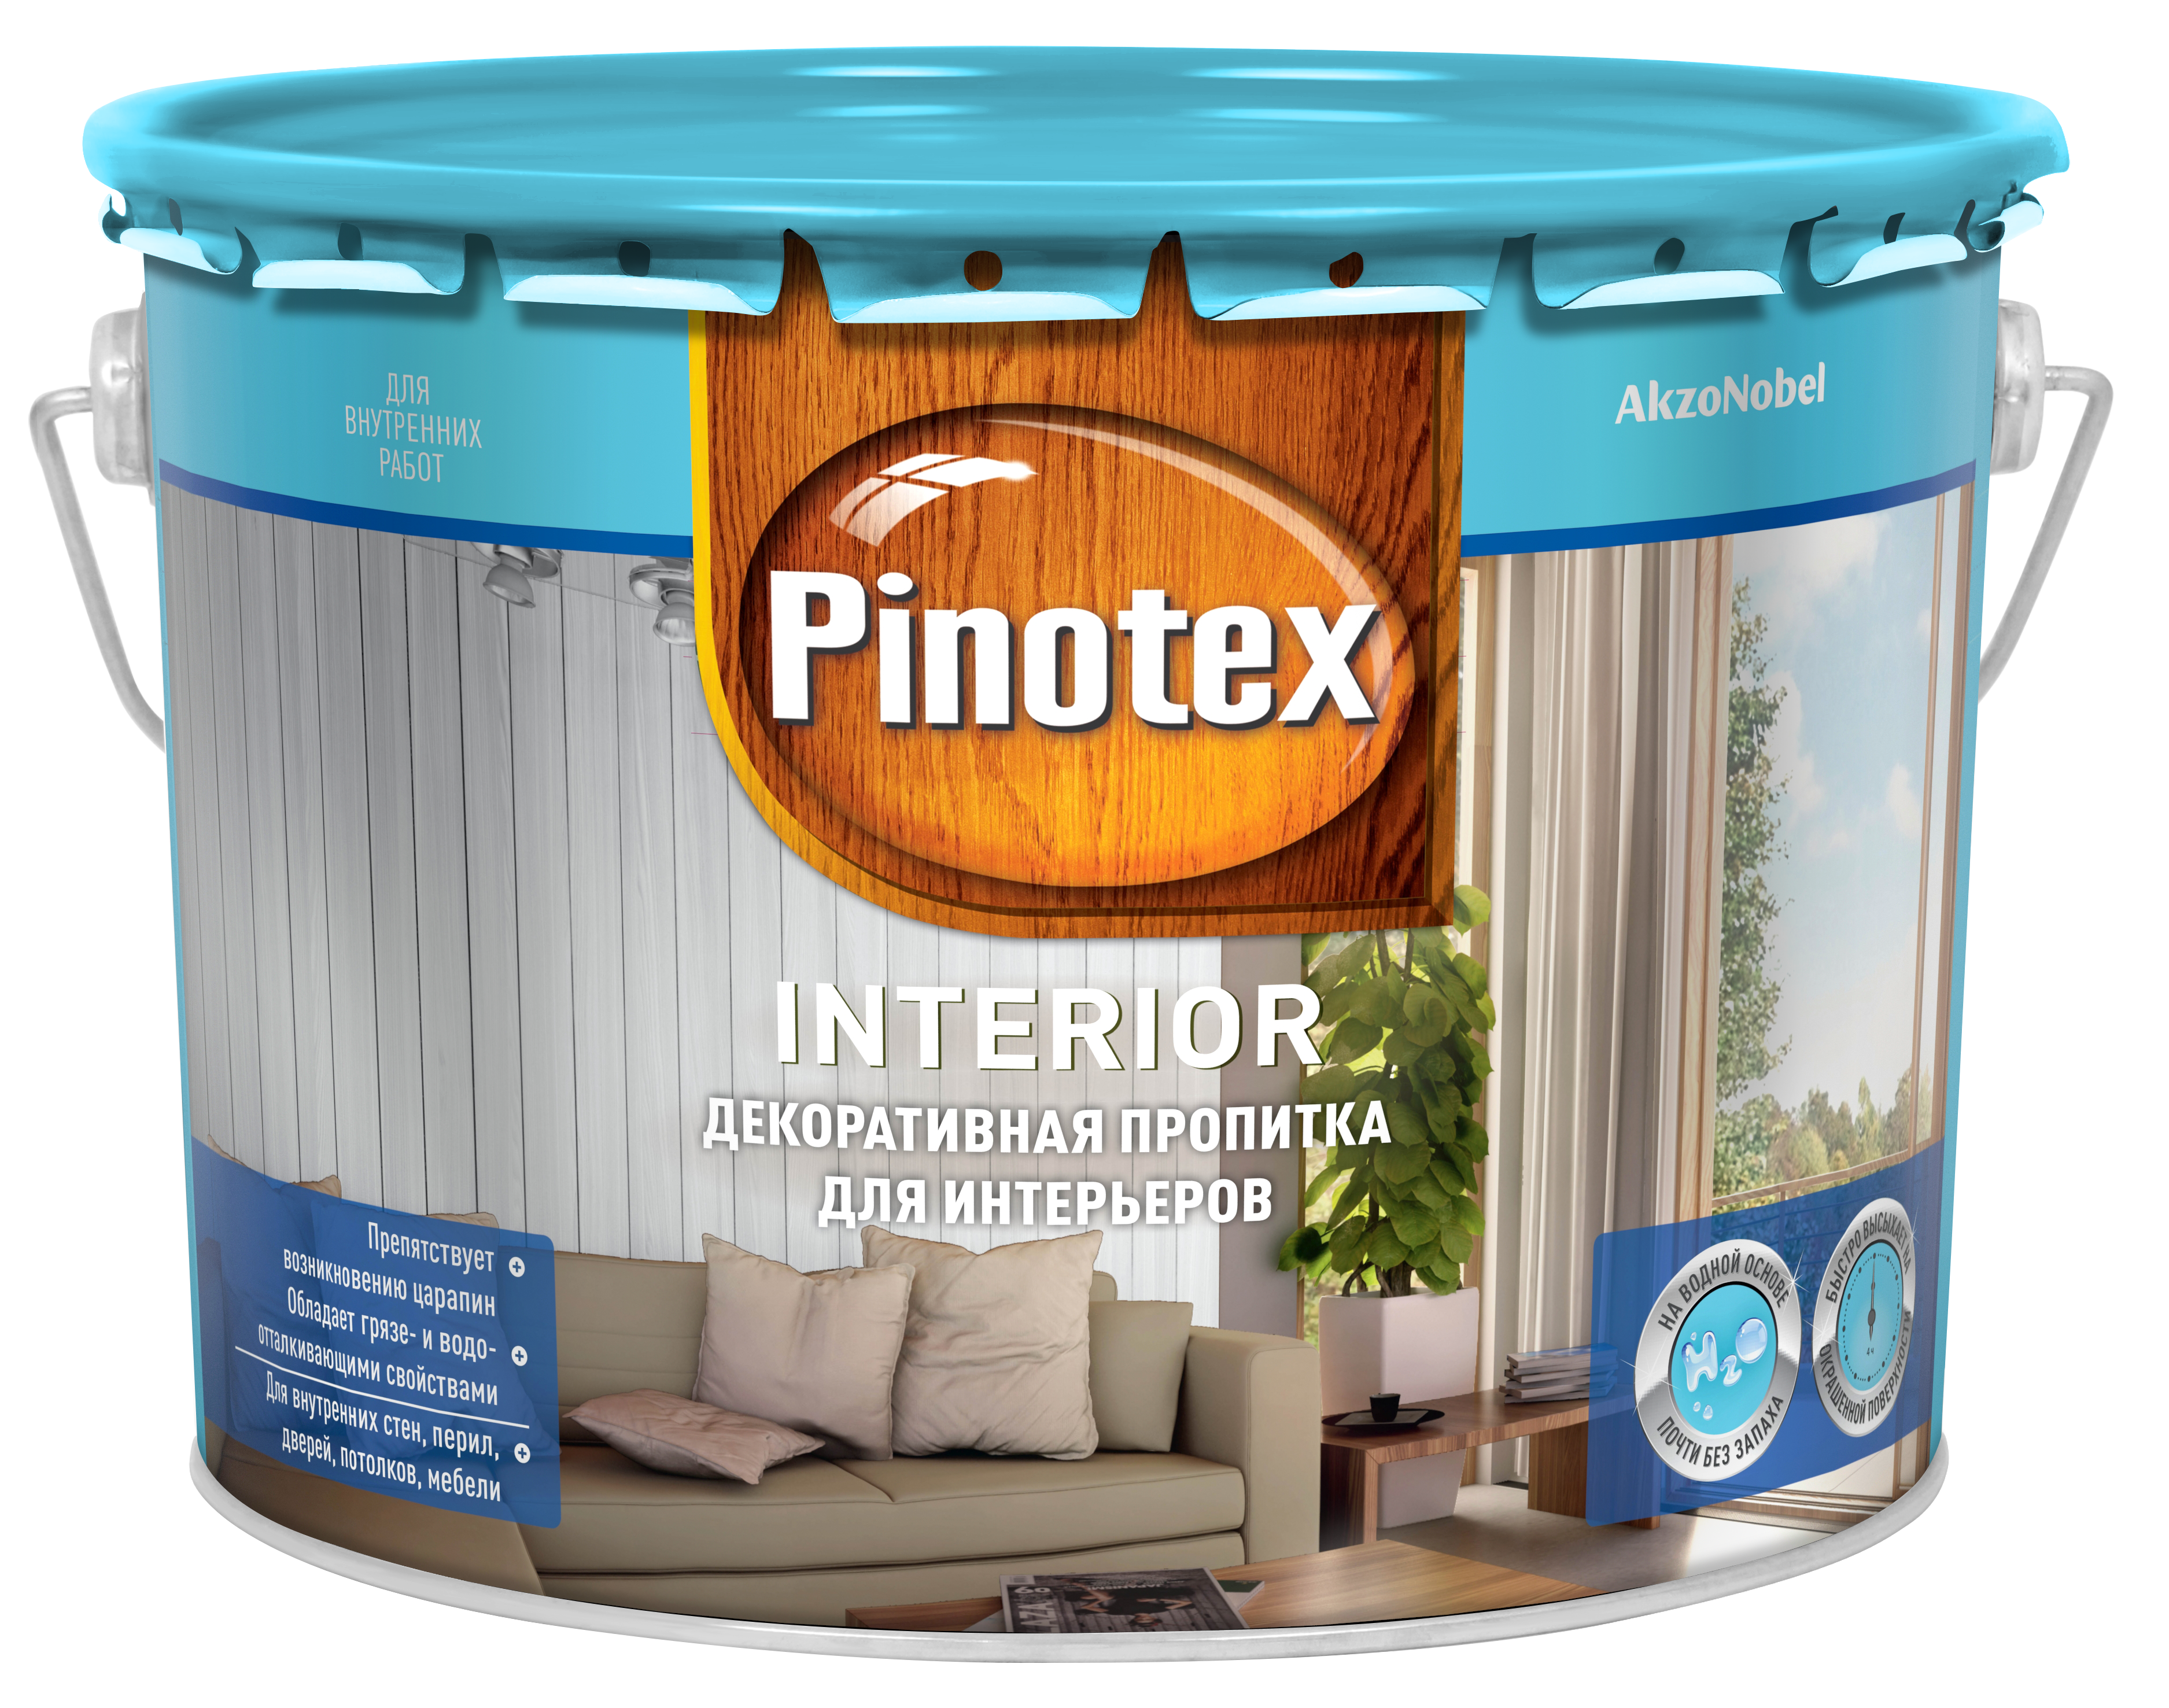 Пинотекс Интерьер/Pinotex Interior Пропитка для интерьеров купить Коломна, цена, отзывы